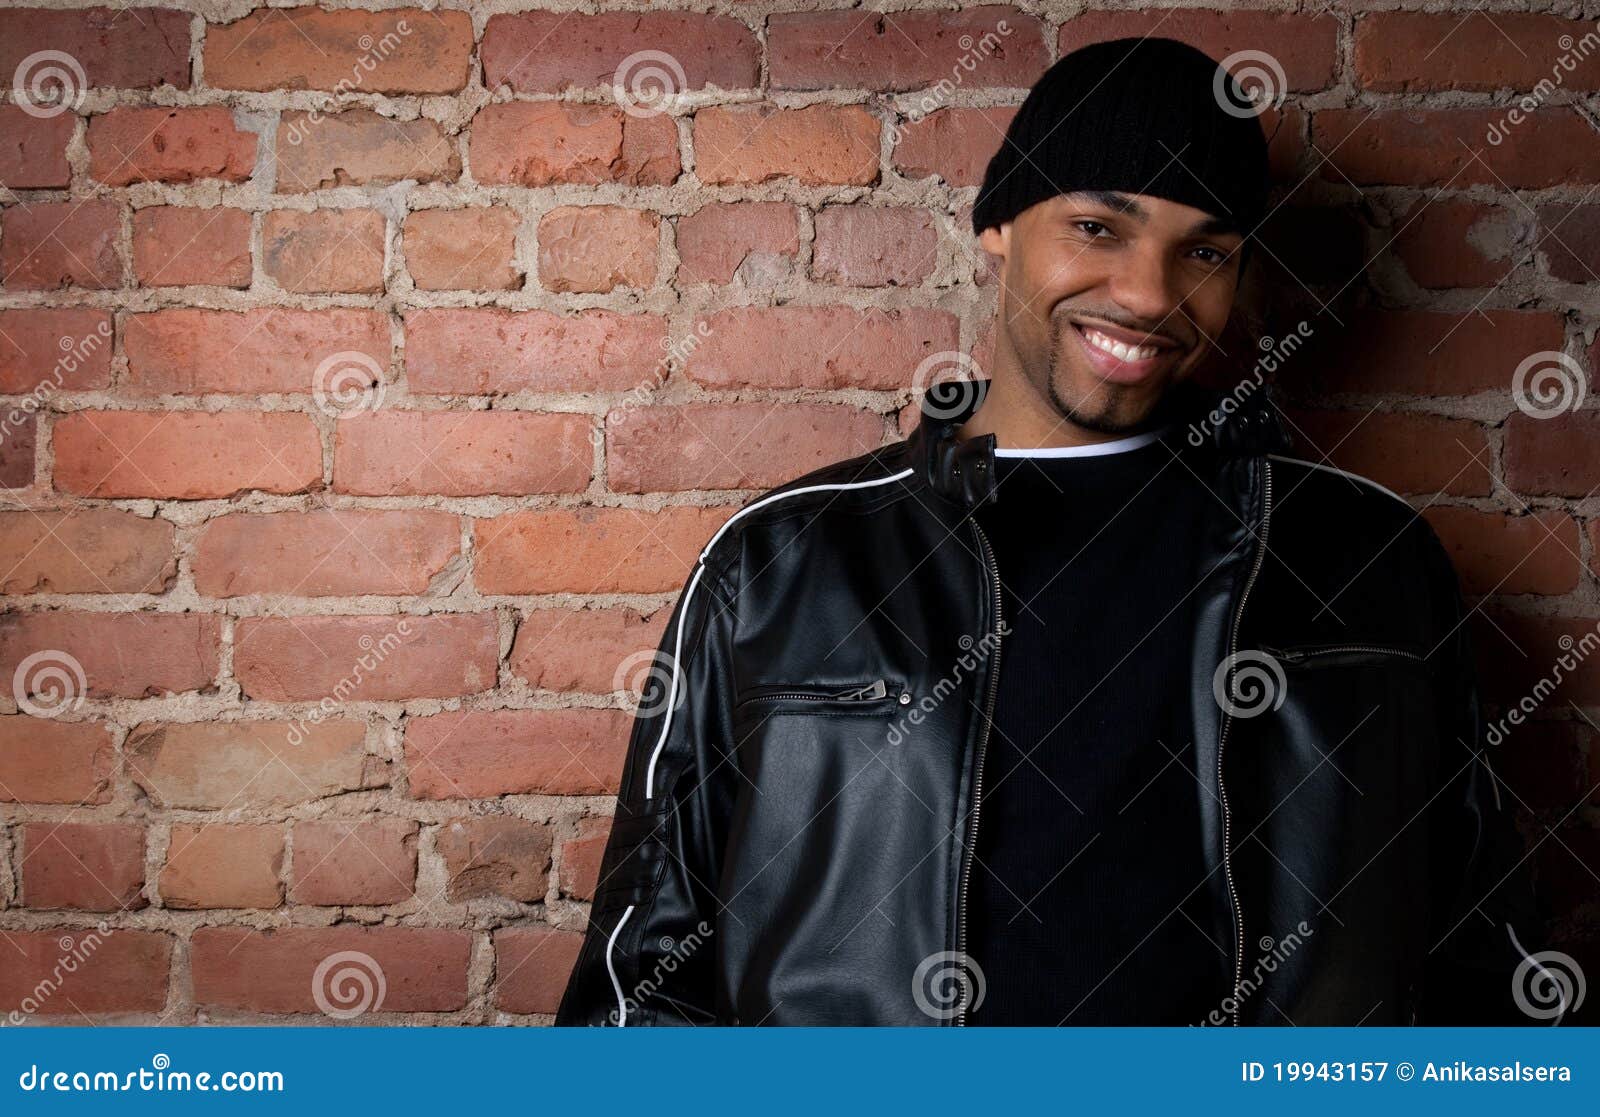 smiling guy in black